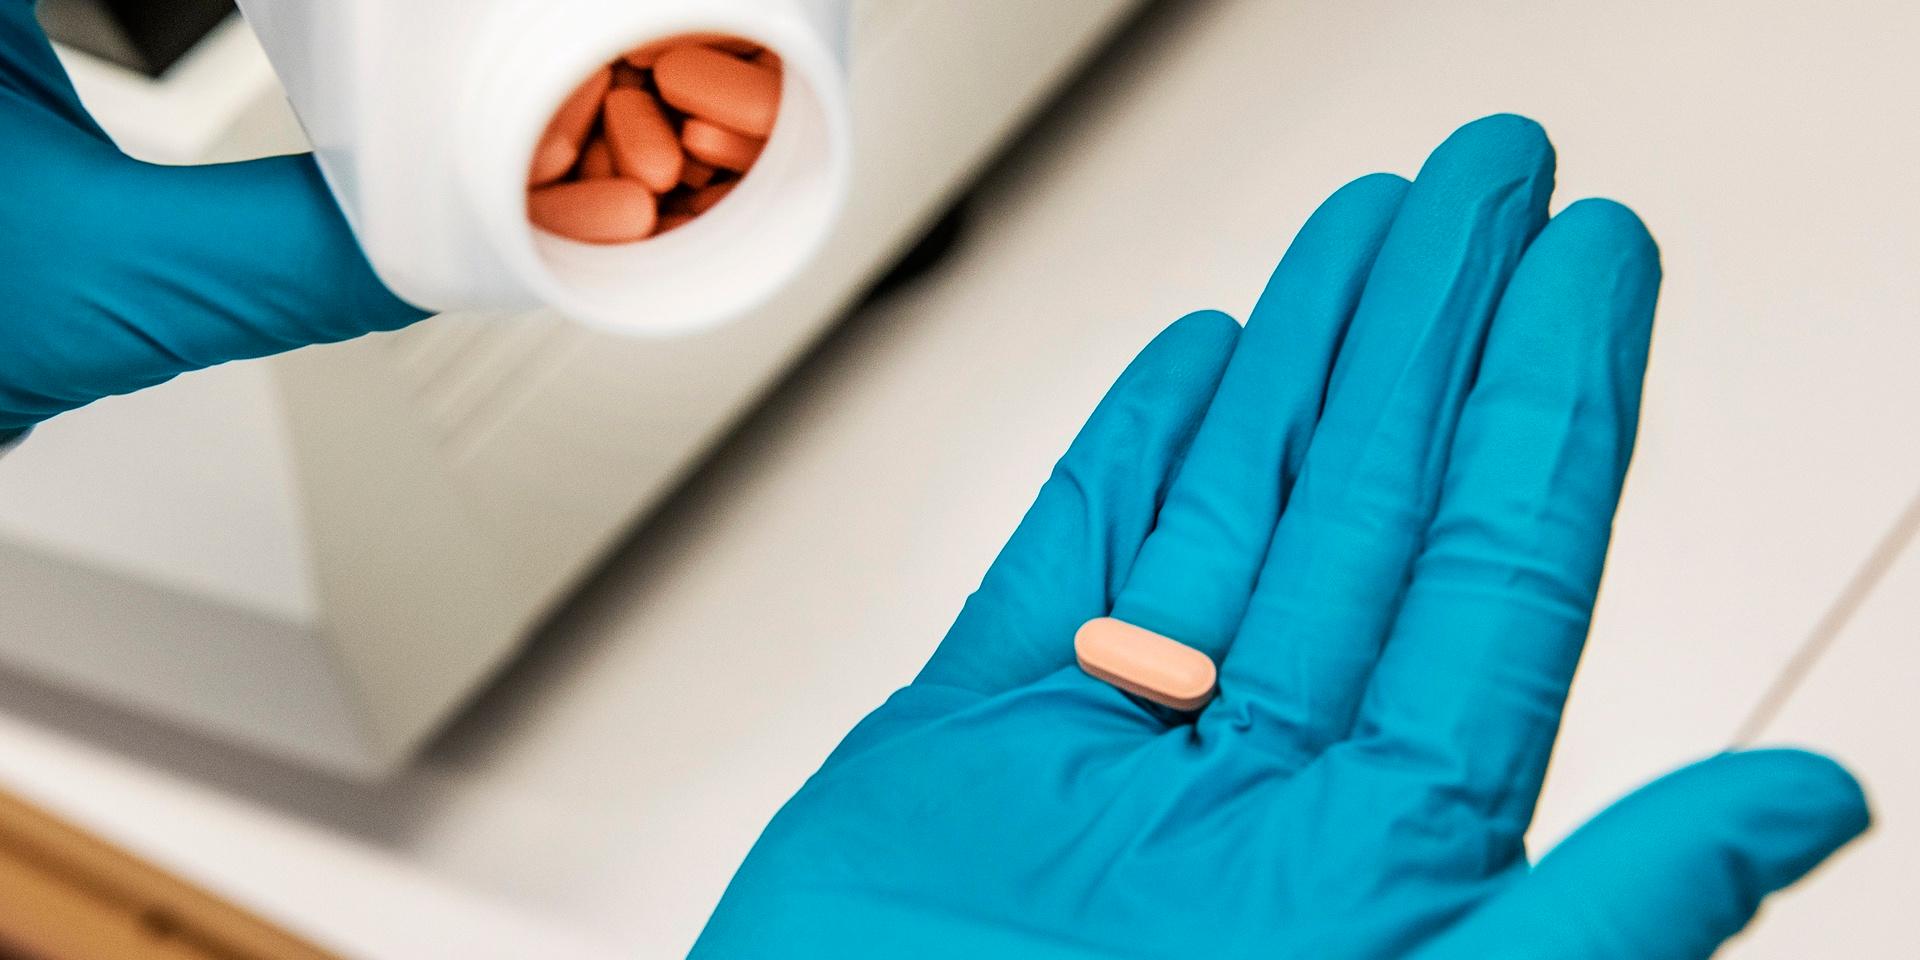 Mediciner står för den största delen av exporten. Här ett piller som forskare i Södertälje undersöker i laboratoriet. Arkivbild.